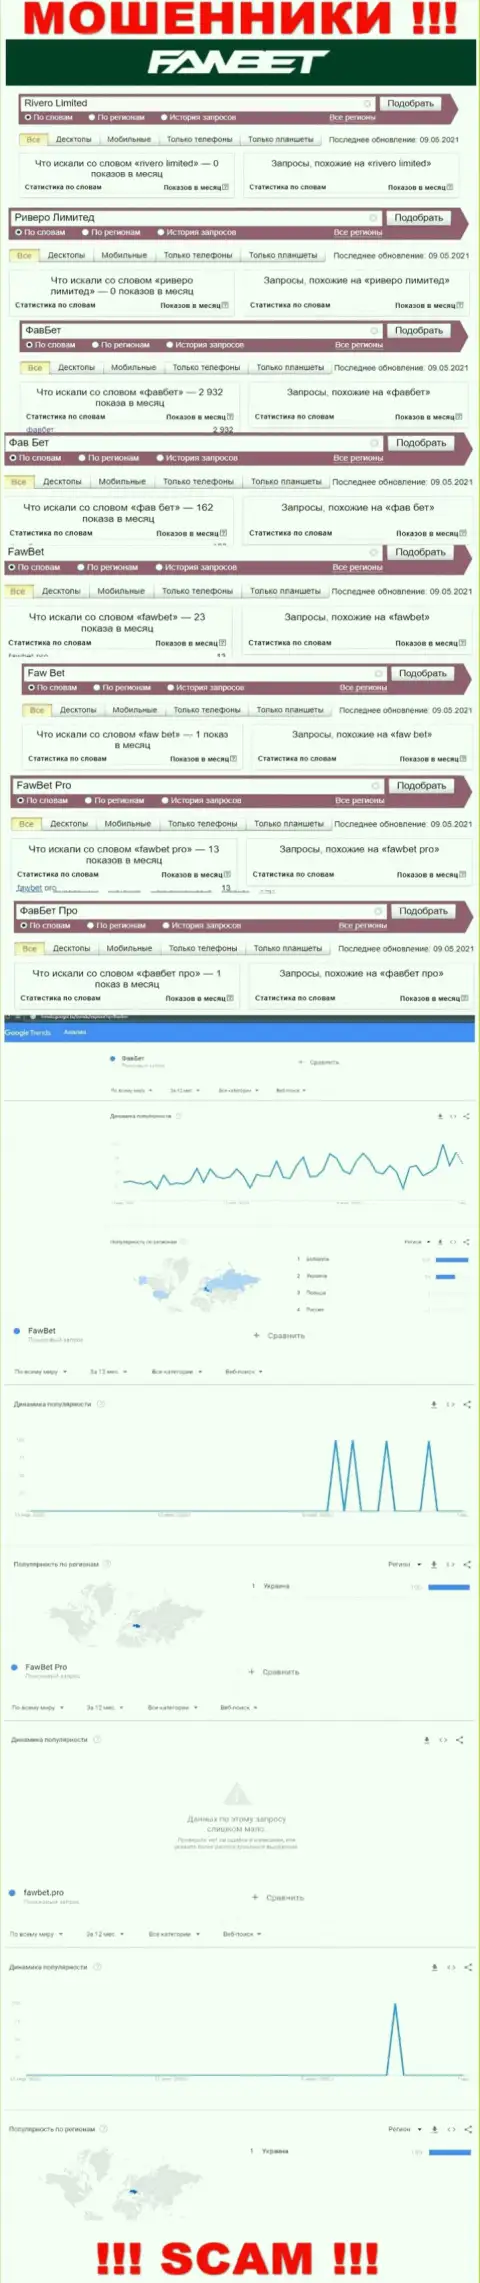 Анализ поисковых запросов, относительно лохотронщиков ФавБет, в глобальной internet сети